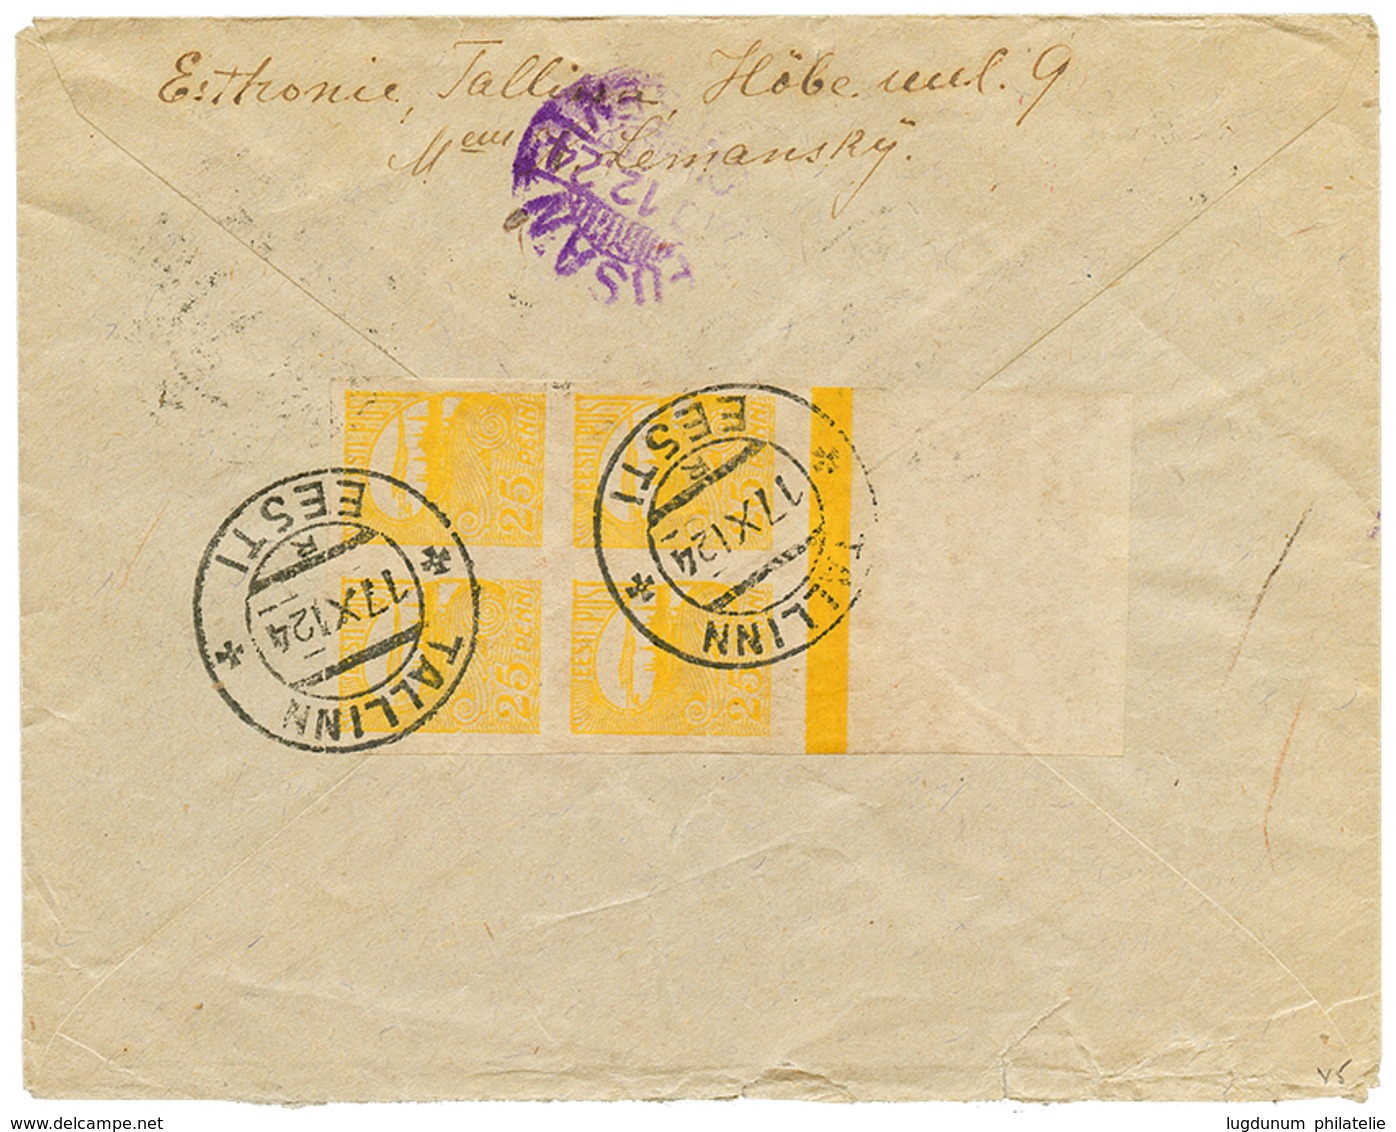 758 ESTONIA To KOREA : 1924 9m + 25p Block Of 4(reverse) Canc. TALLINN EESTI On Taxed Envelope To KINSEN KOREA. Extremel - Crete